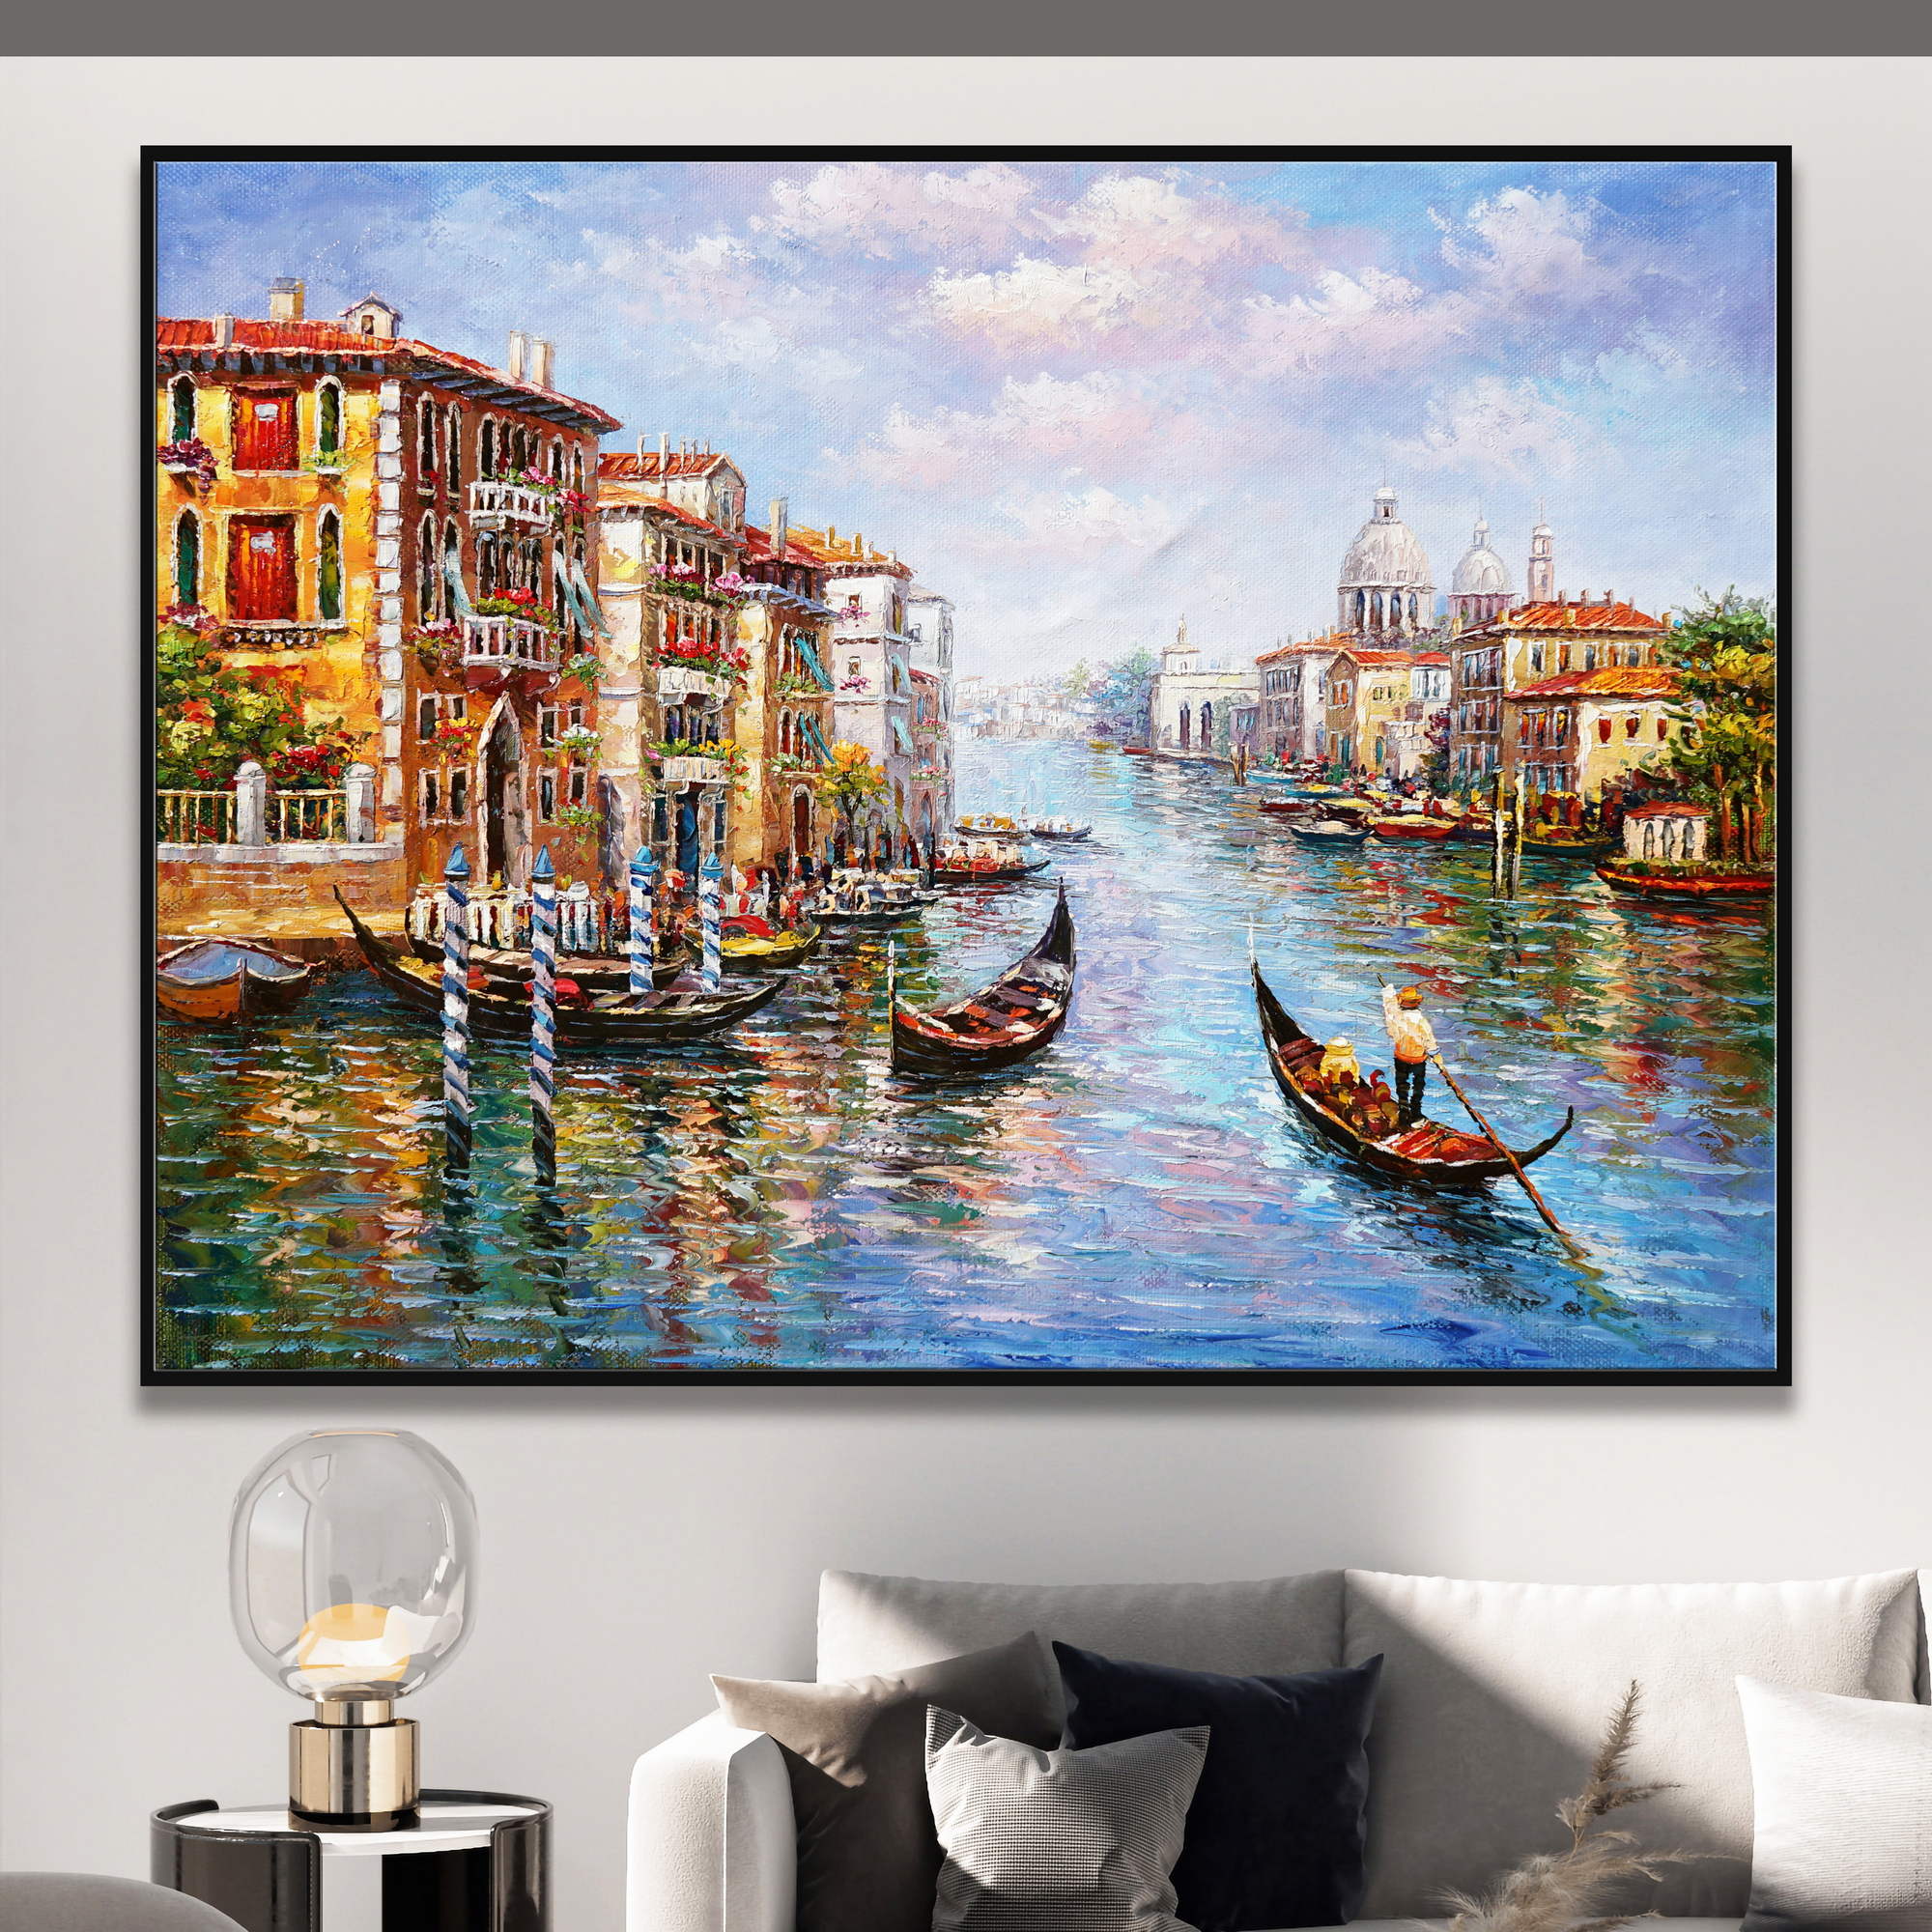 Dipinto di un canale a Venezia con gondole e architettura tipica